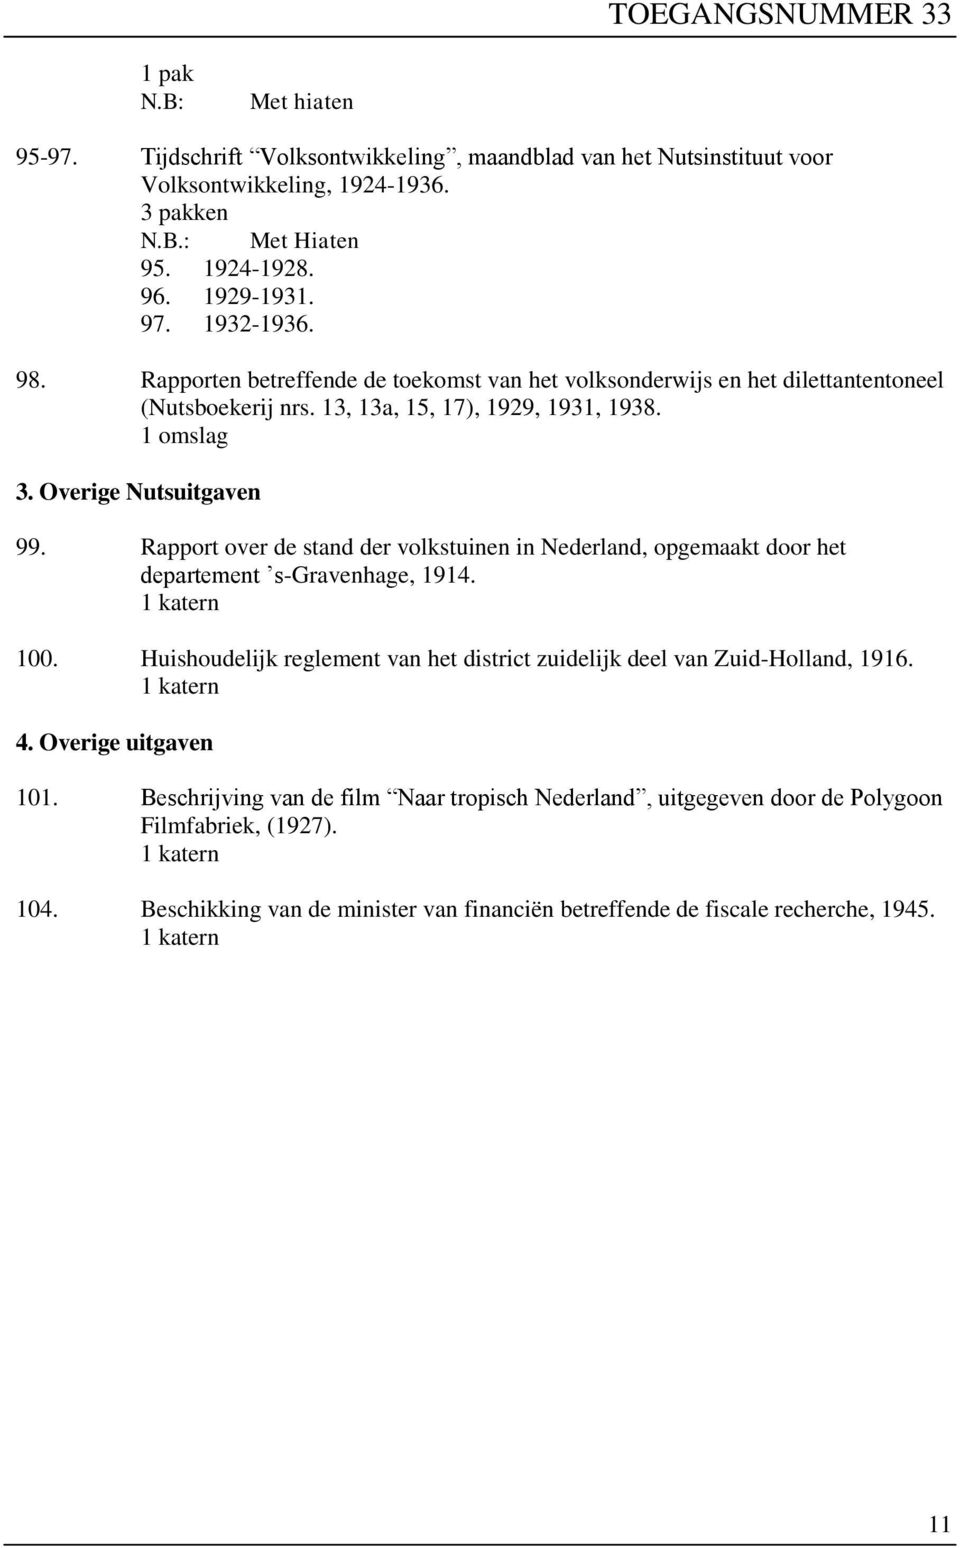 Rapport over de stand der volkstuinen in Nederland, opgemaakt door het departement s-gravenhage, 1914. 100. Huishoudelijk reglement van het district zuidelijk deel van Zuid-Holland, 1916. 4.